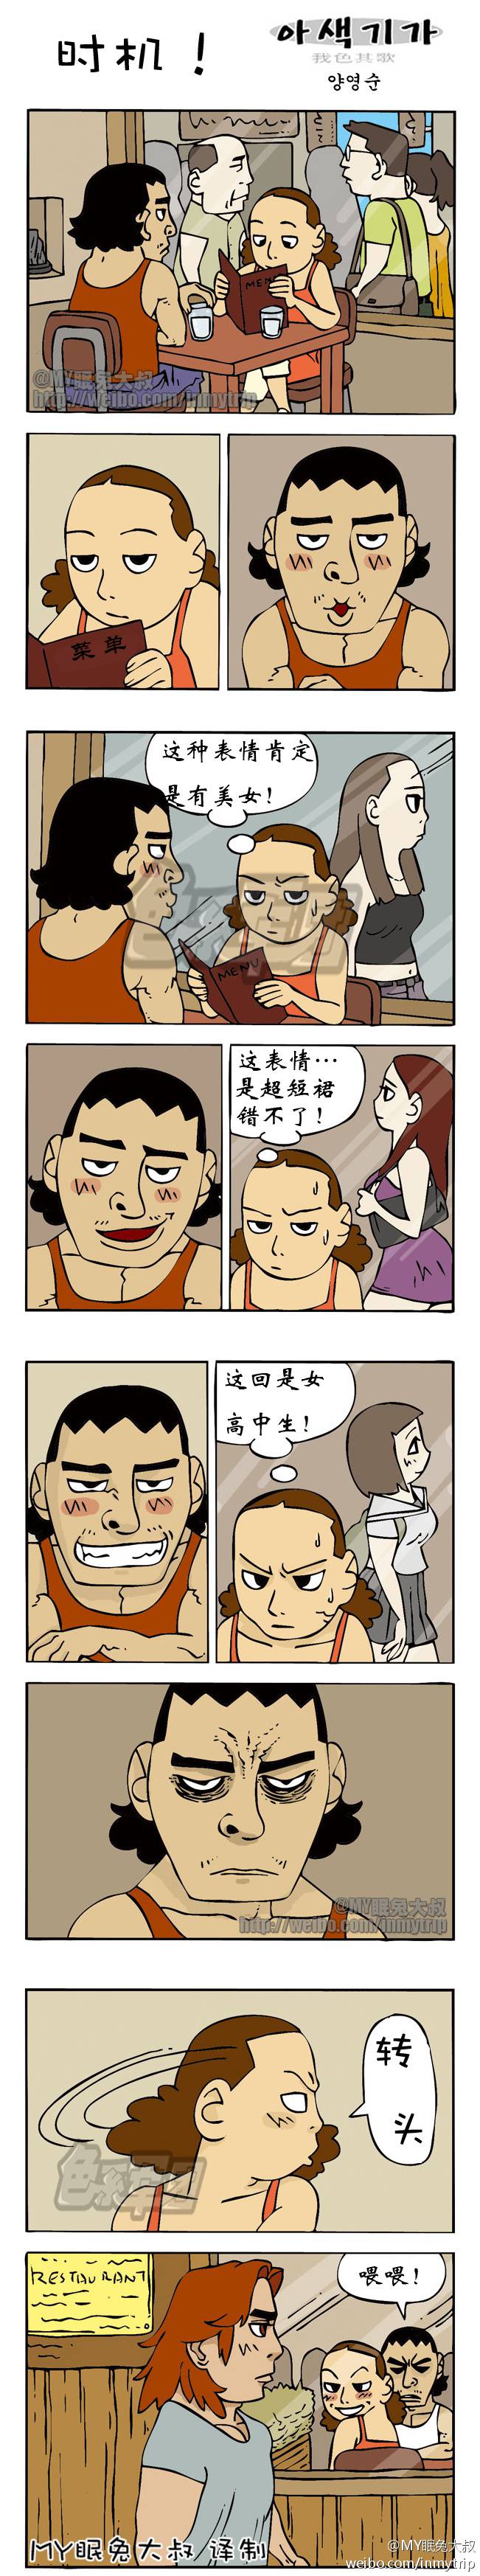 邪恶漫画爆笑囧图第57刊：奸